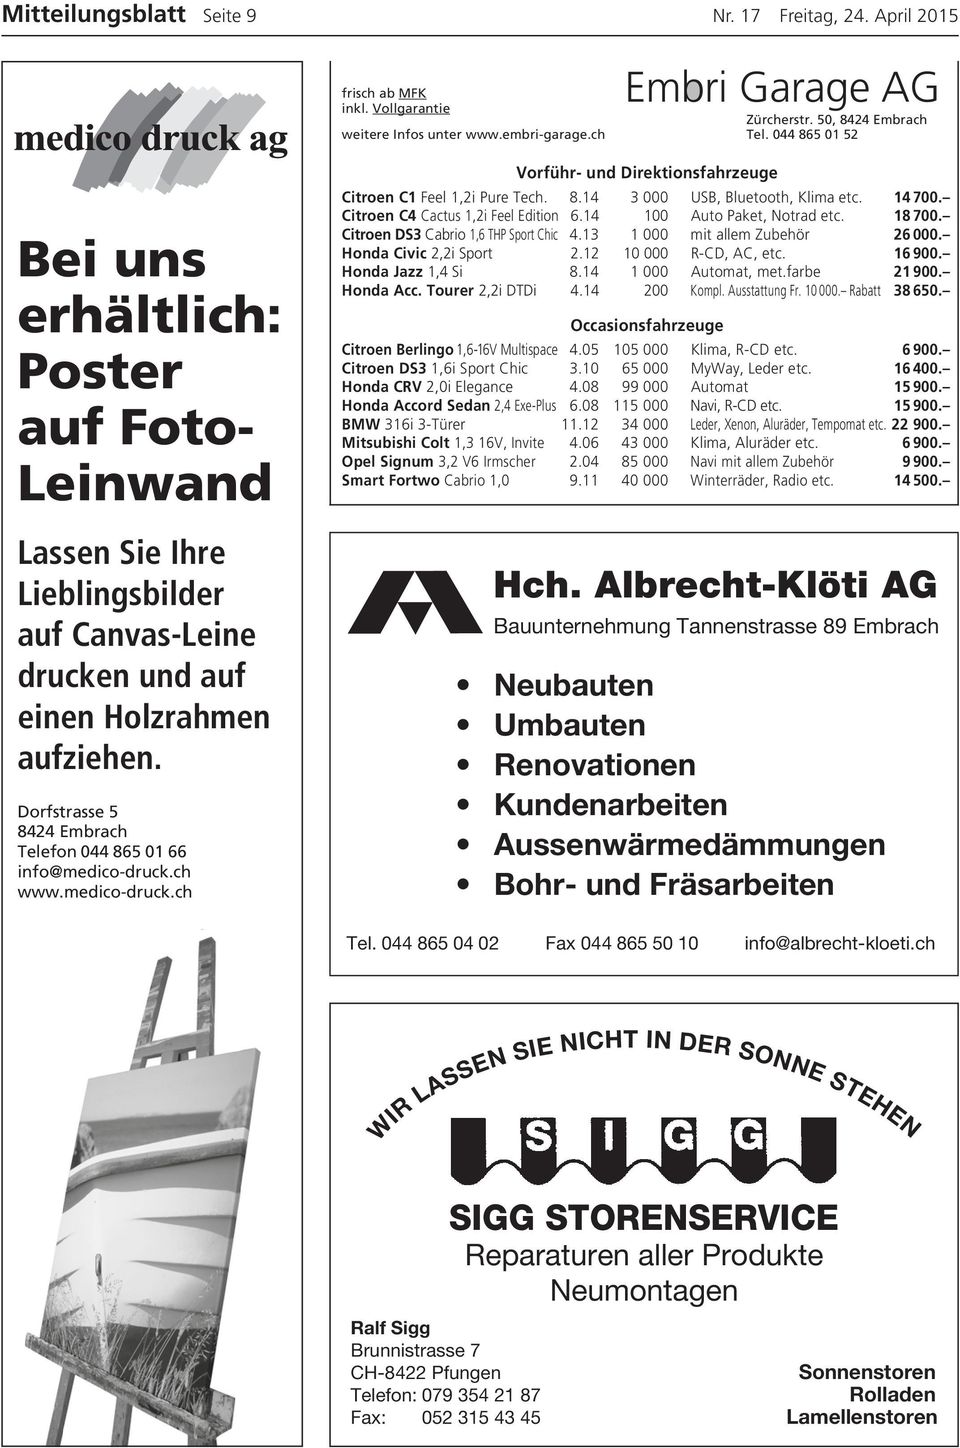 Dorfstrasse 5 8424 Embrach Telefon 044 865 01 66 info@medico-druck.ch www.medico-druck.ch Vorführ- und Direktionsfahrzeuge Citroen C1 Feel 1,2i Pure Tech. 8.14 3 000 USB, Bluetooth, Klima etc. 14 700.